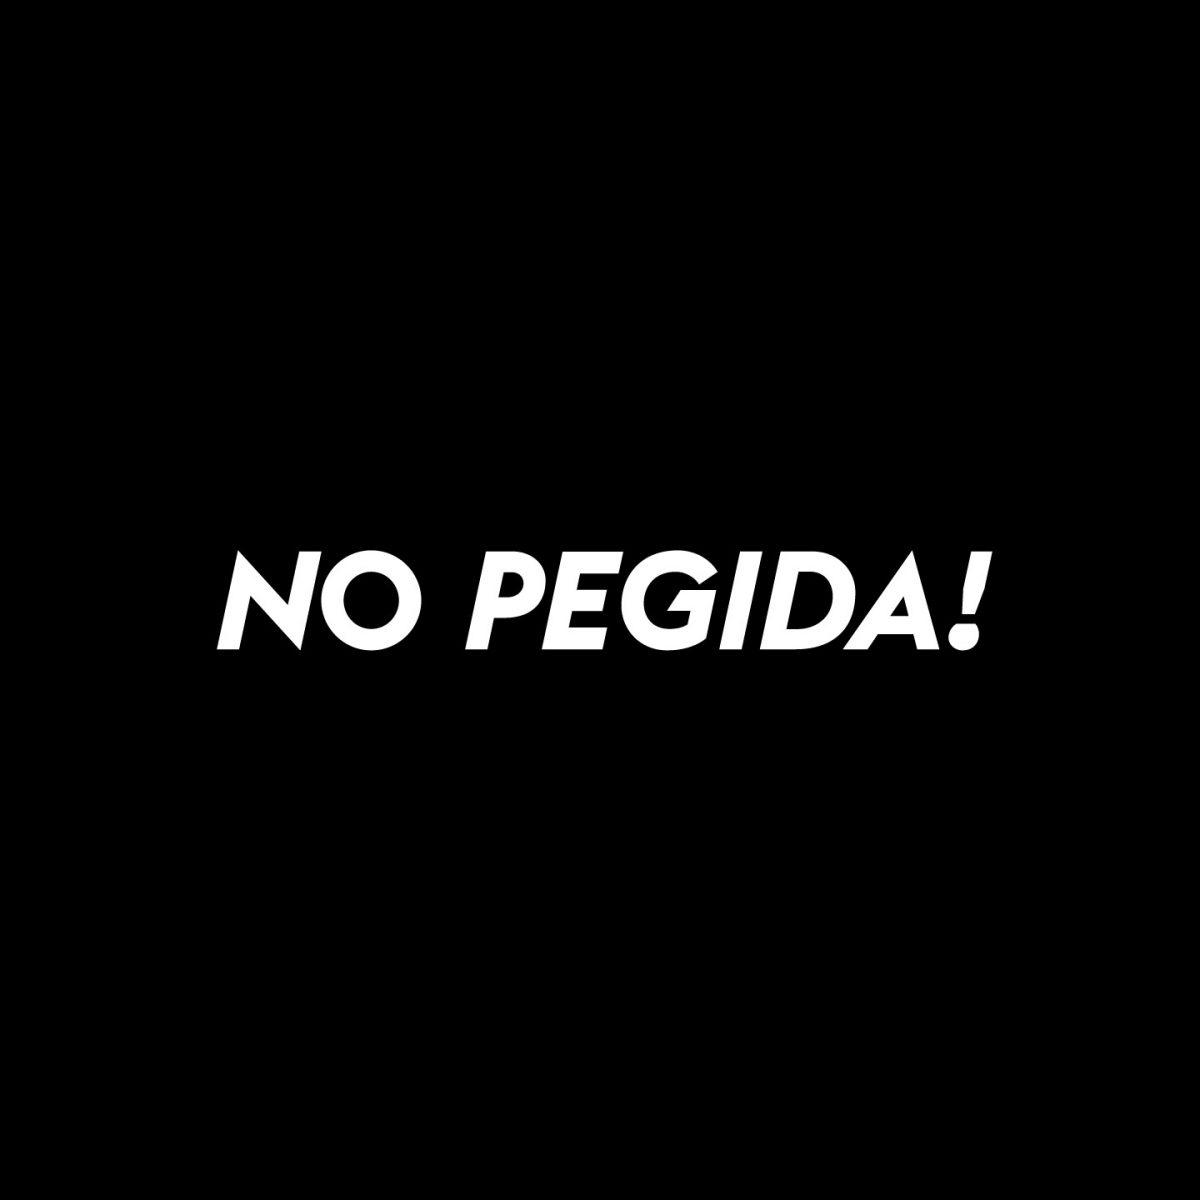 No! No! No PEGIDA!